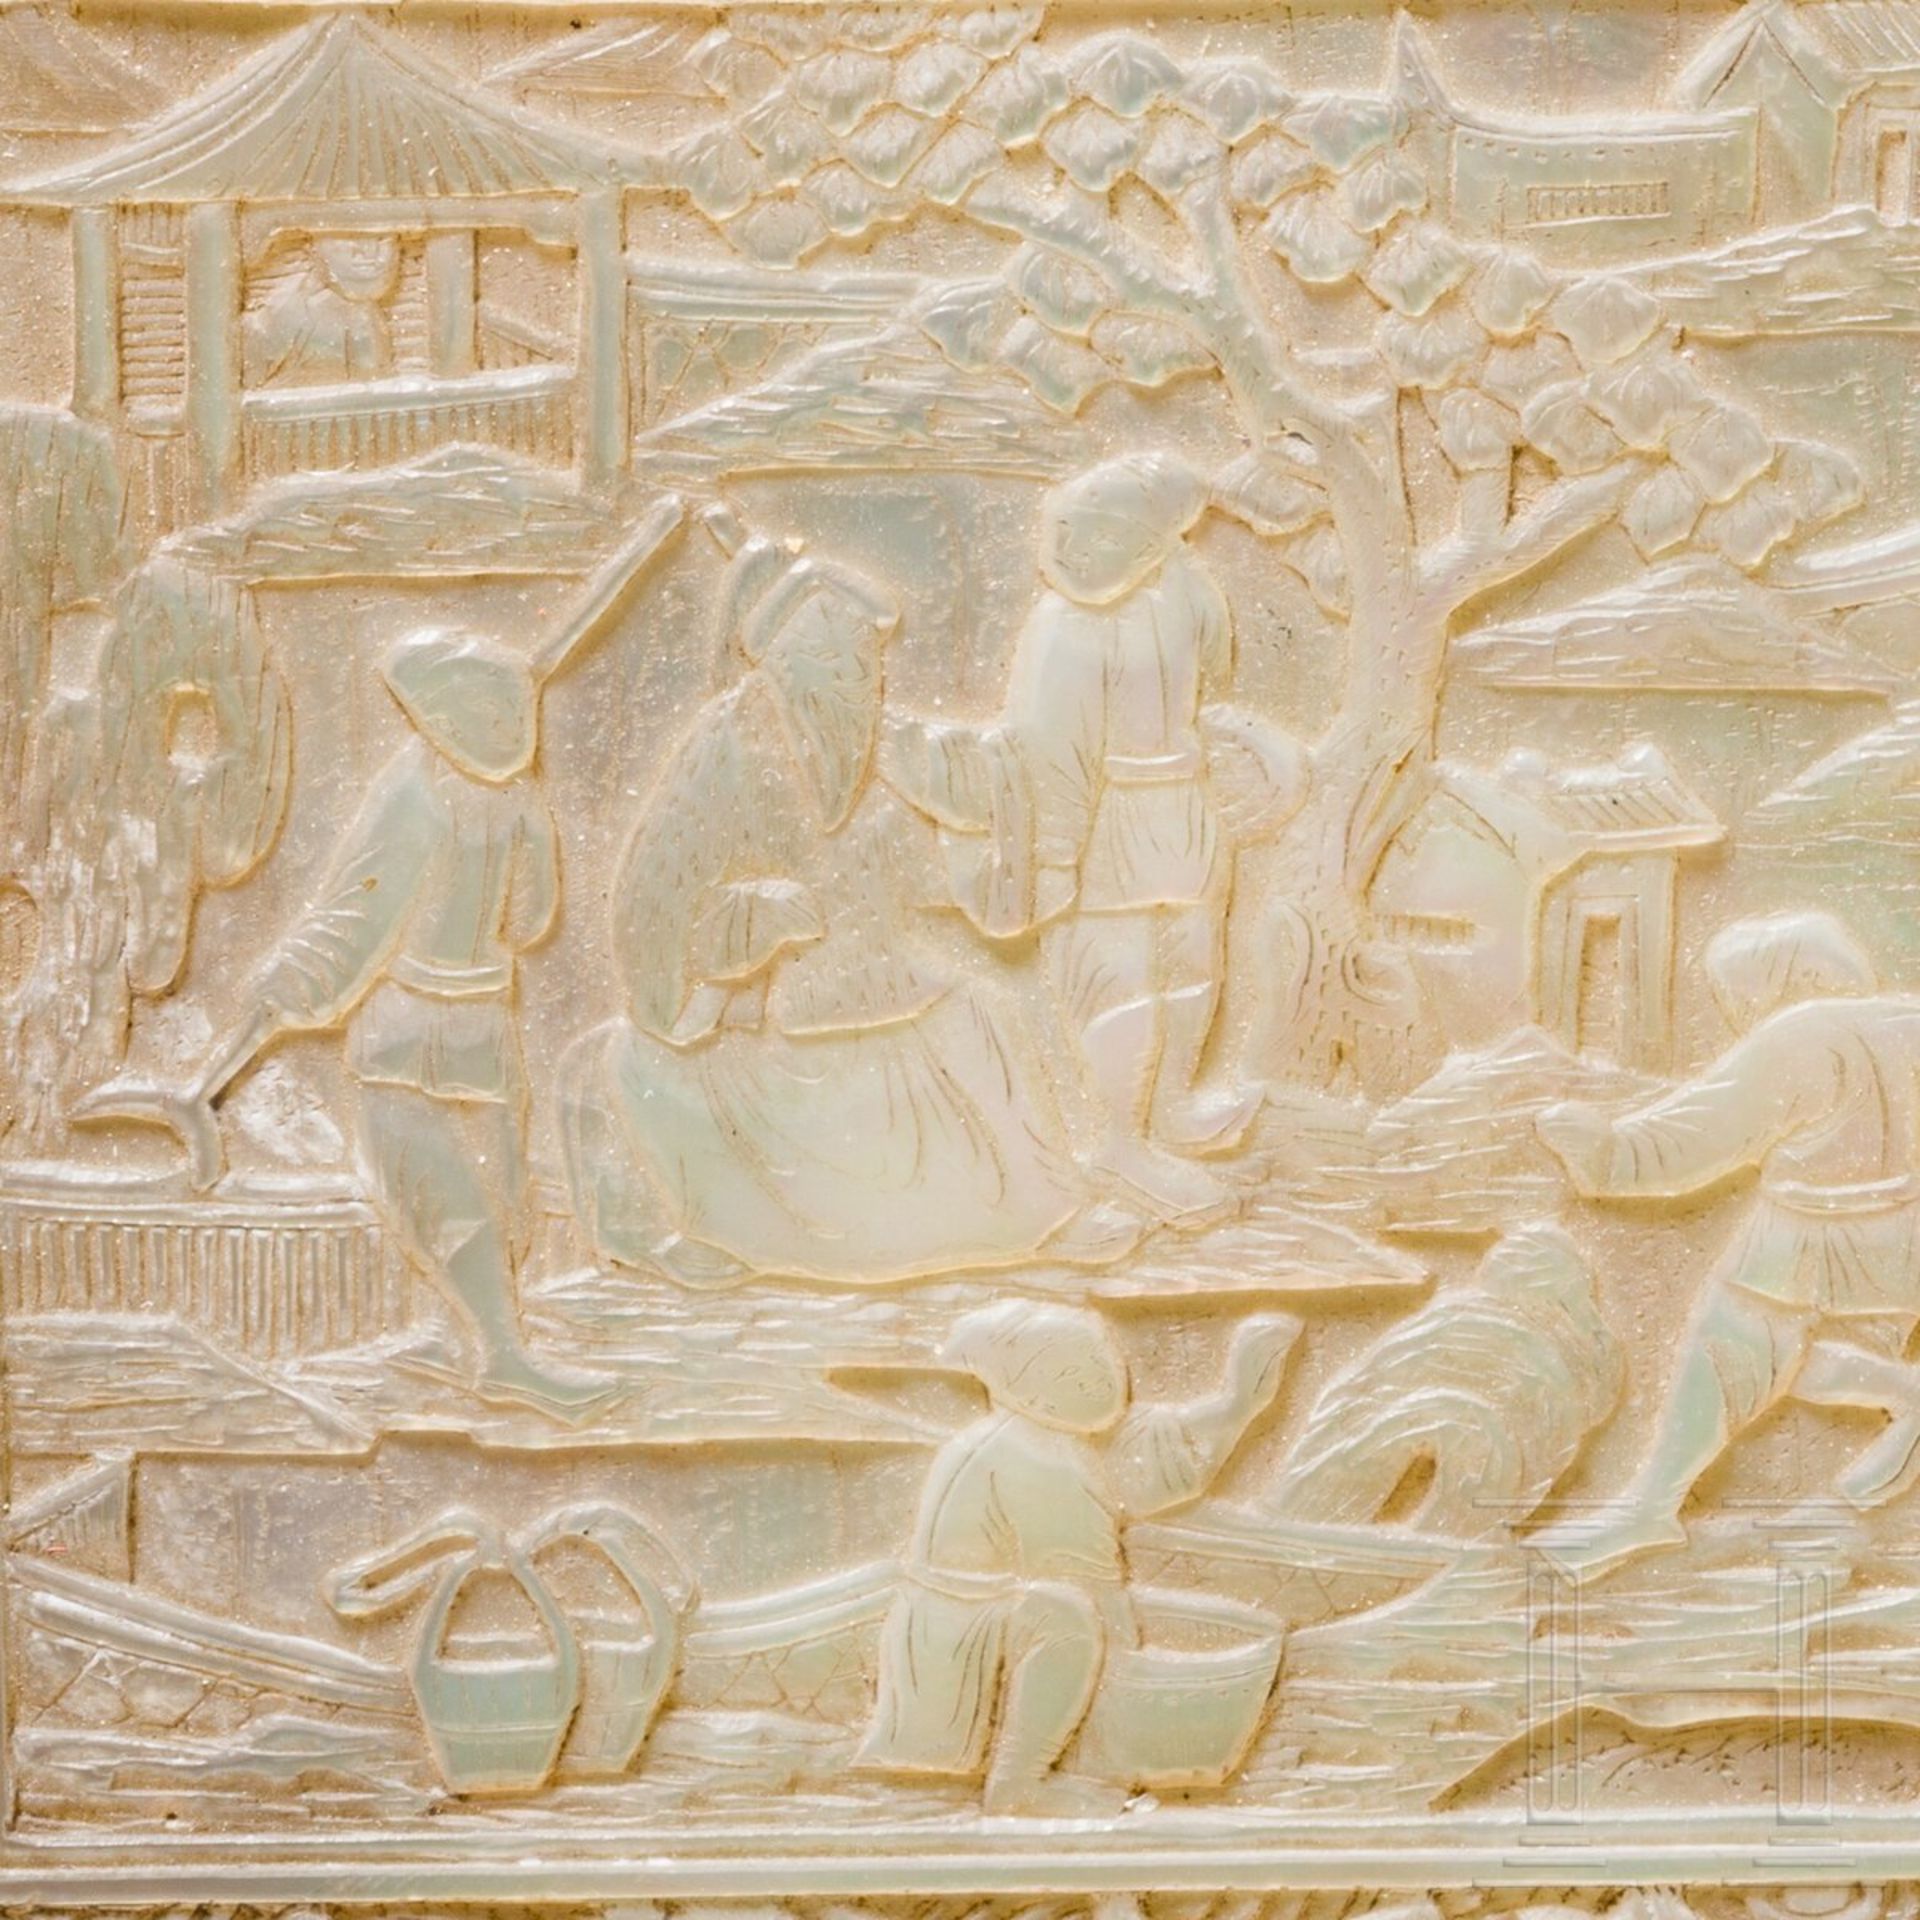 Fein geschnitzte Perlmutt-Tabatiere, chinesische Exportarbeit, um 1800 - Bild 6 aus 6